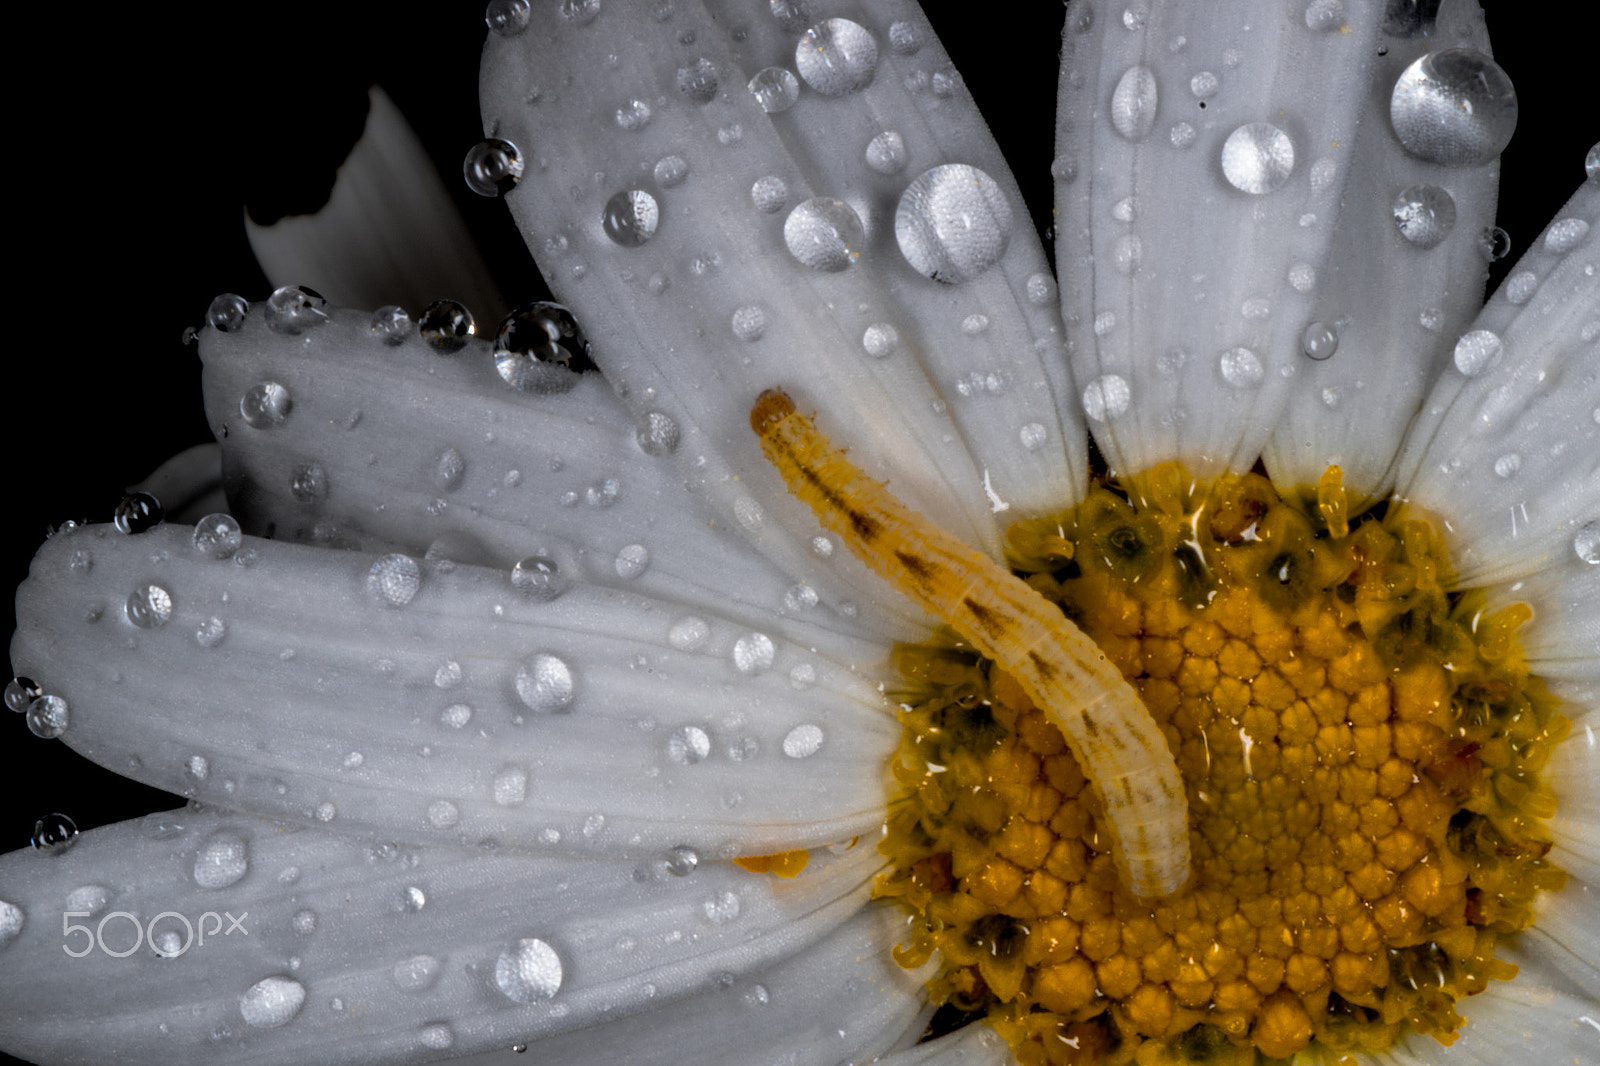 Pentax K-S2 sample photo. Rainy daisy photography